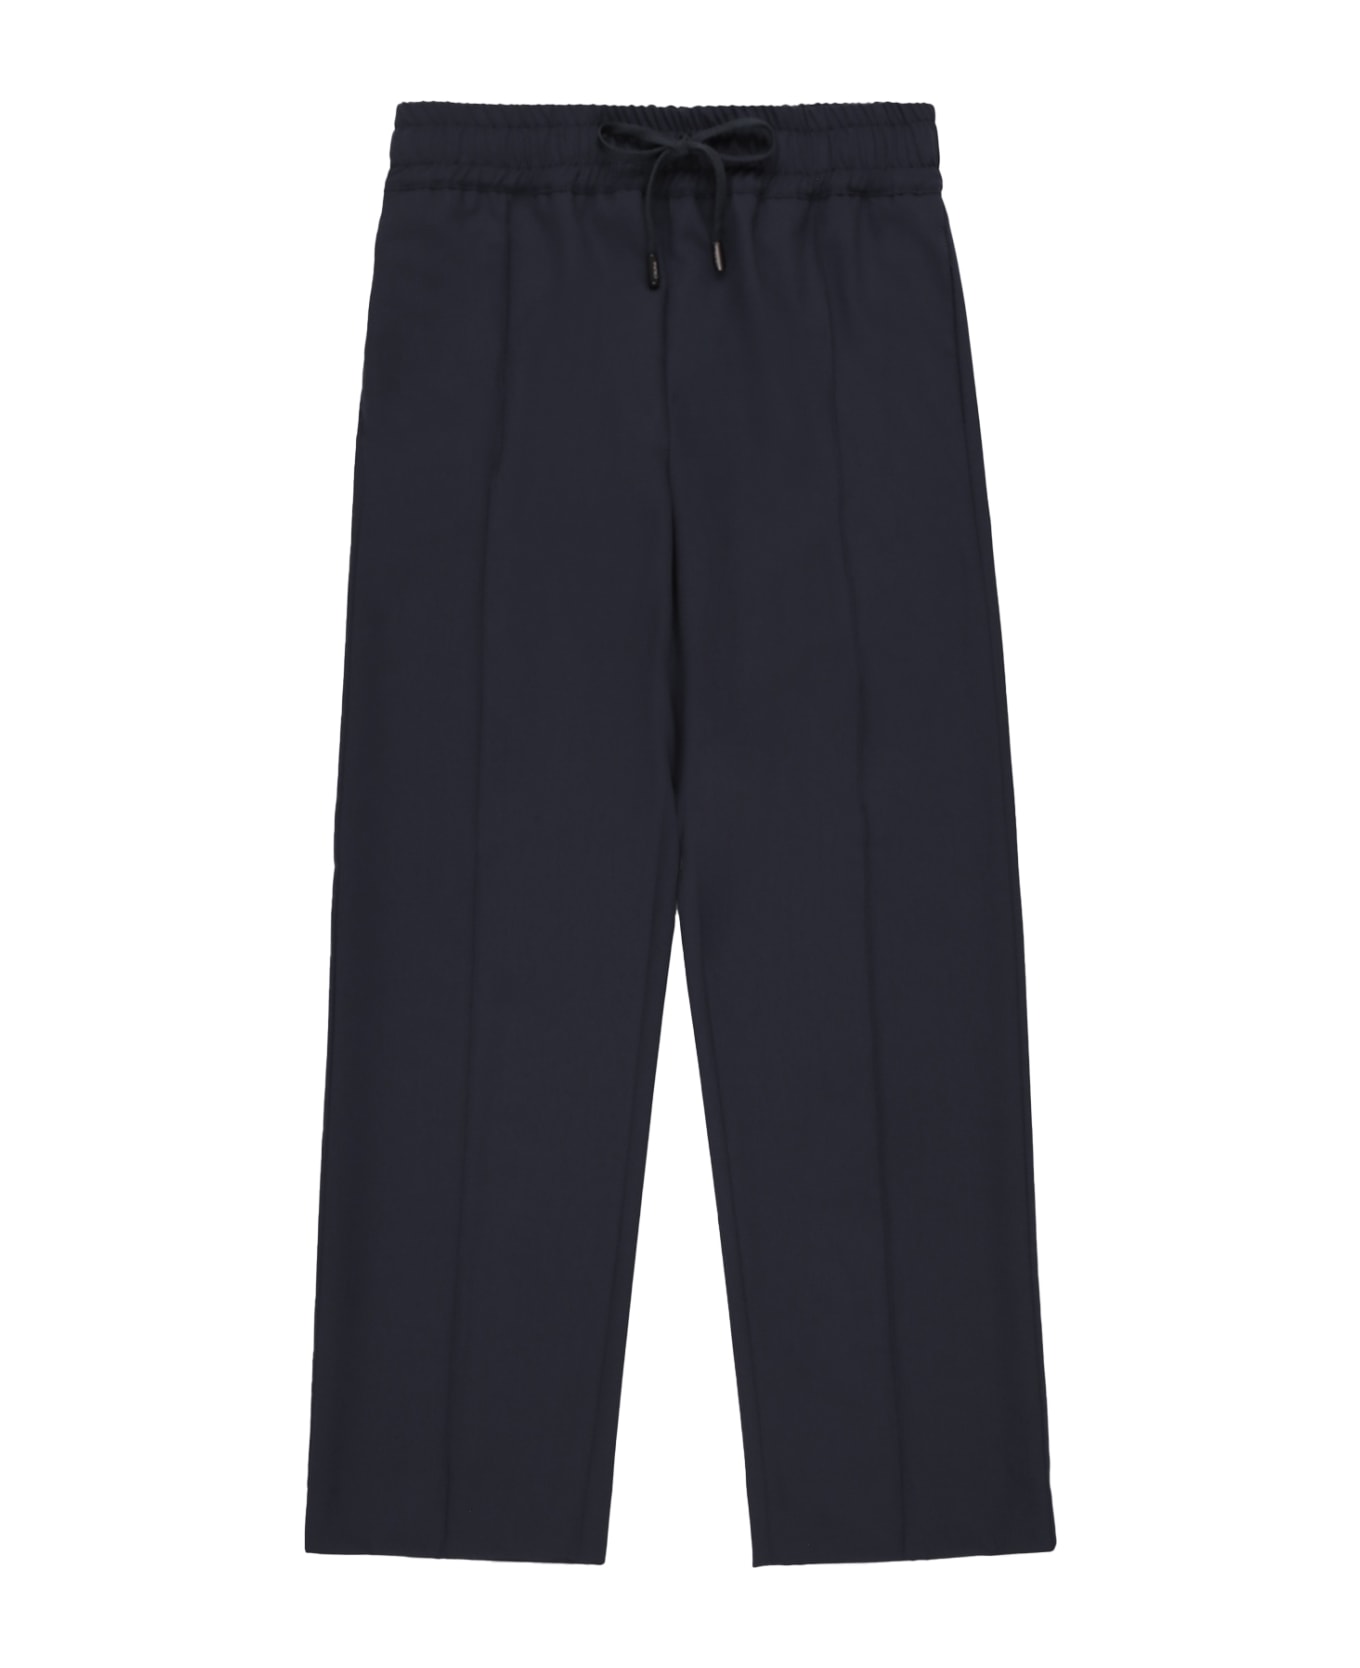 Cruna Navy Blue Viscose Trousers - NOTTE